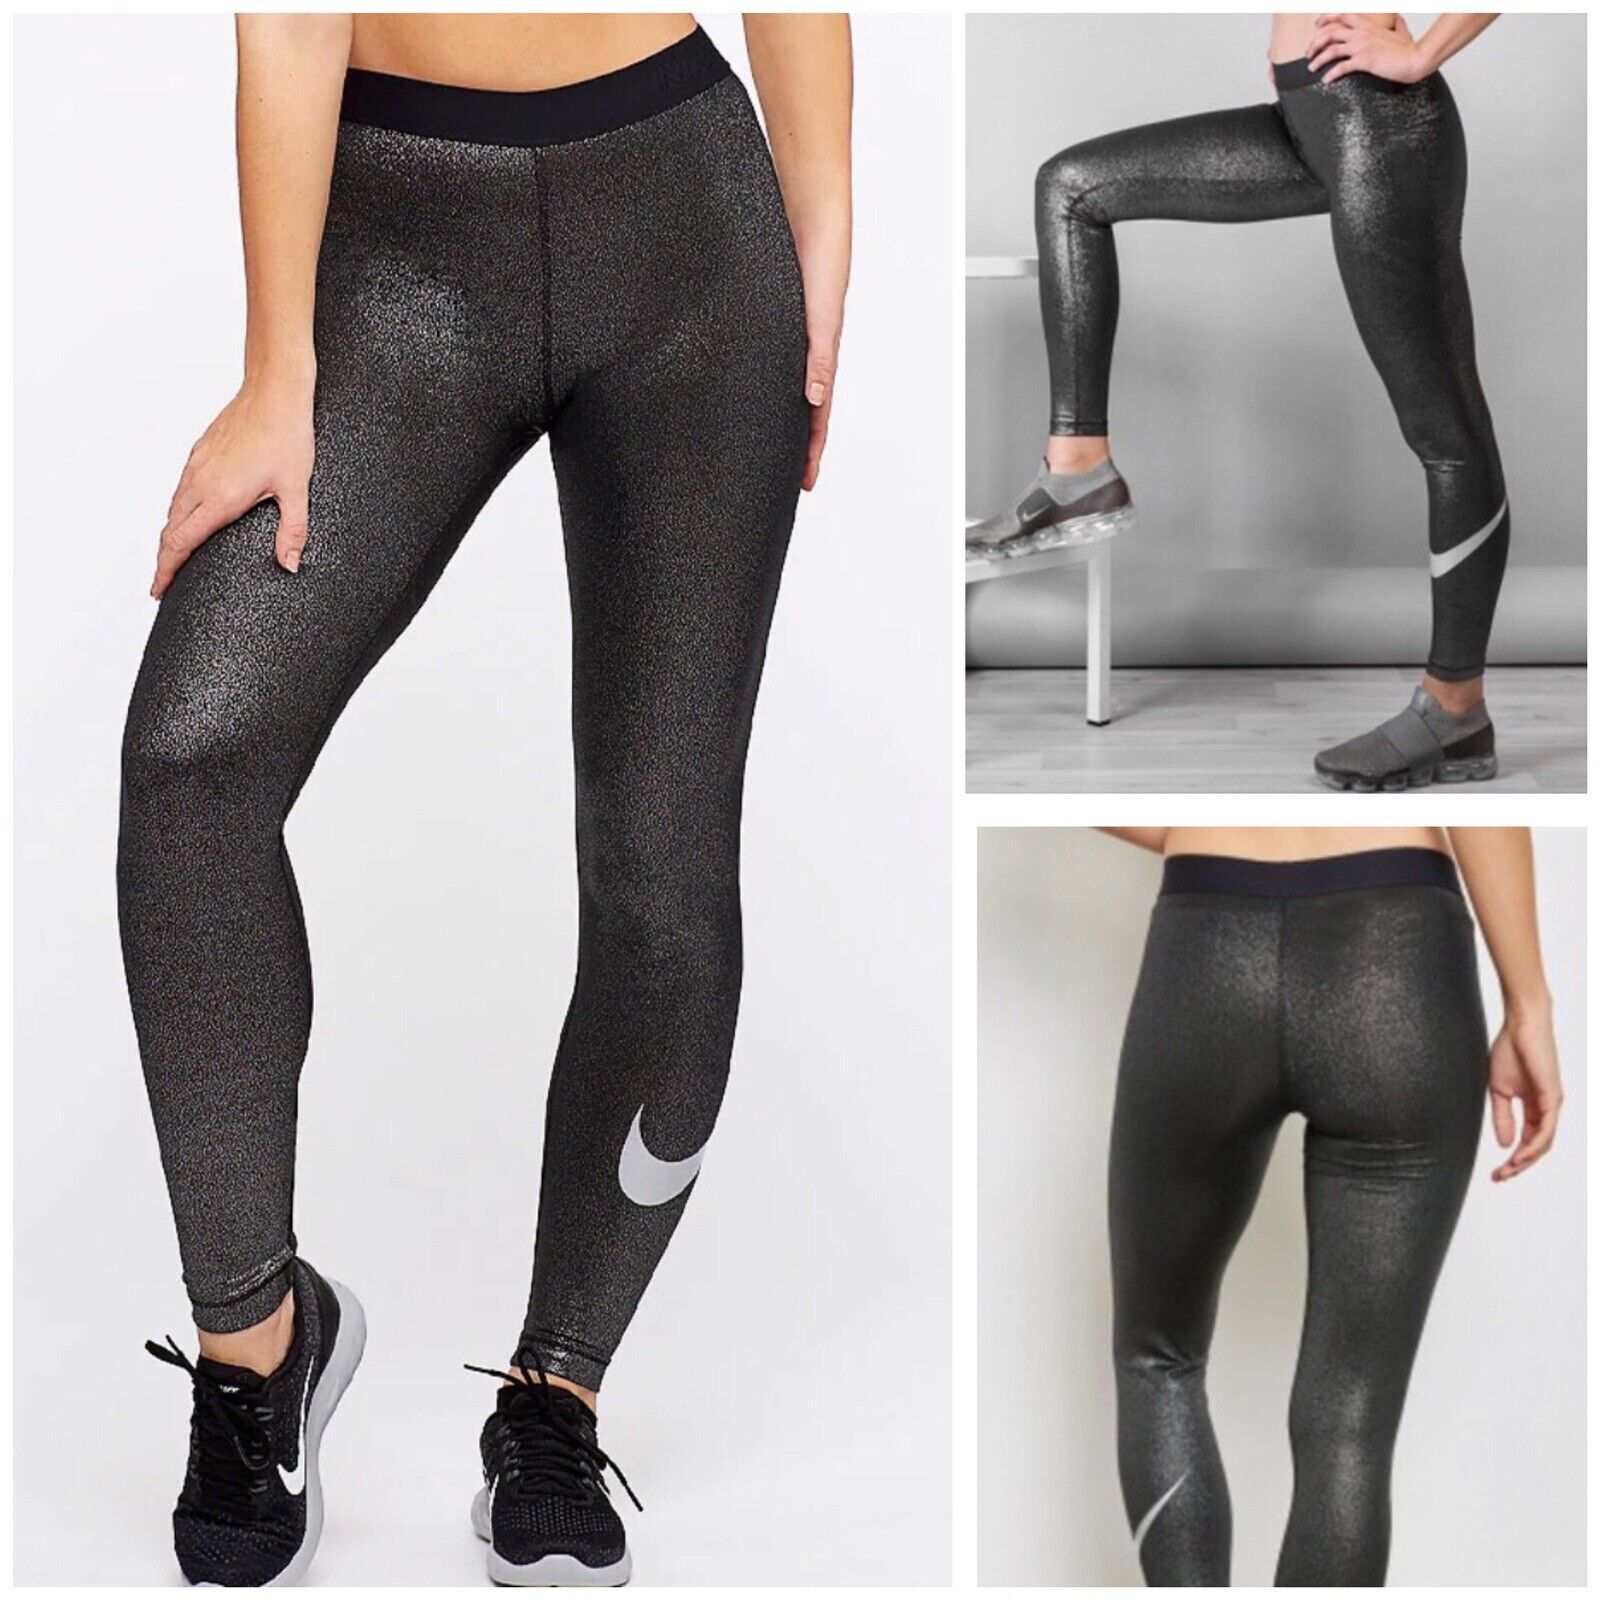 Espectador Desaparecer ciclo Nike Women&#039;s Pro Cool Tights Sparkle Black Metallic Silver Small | eBay